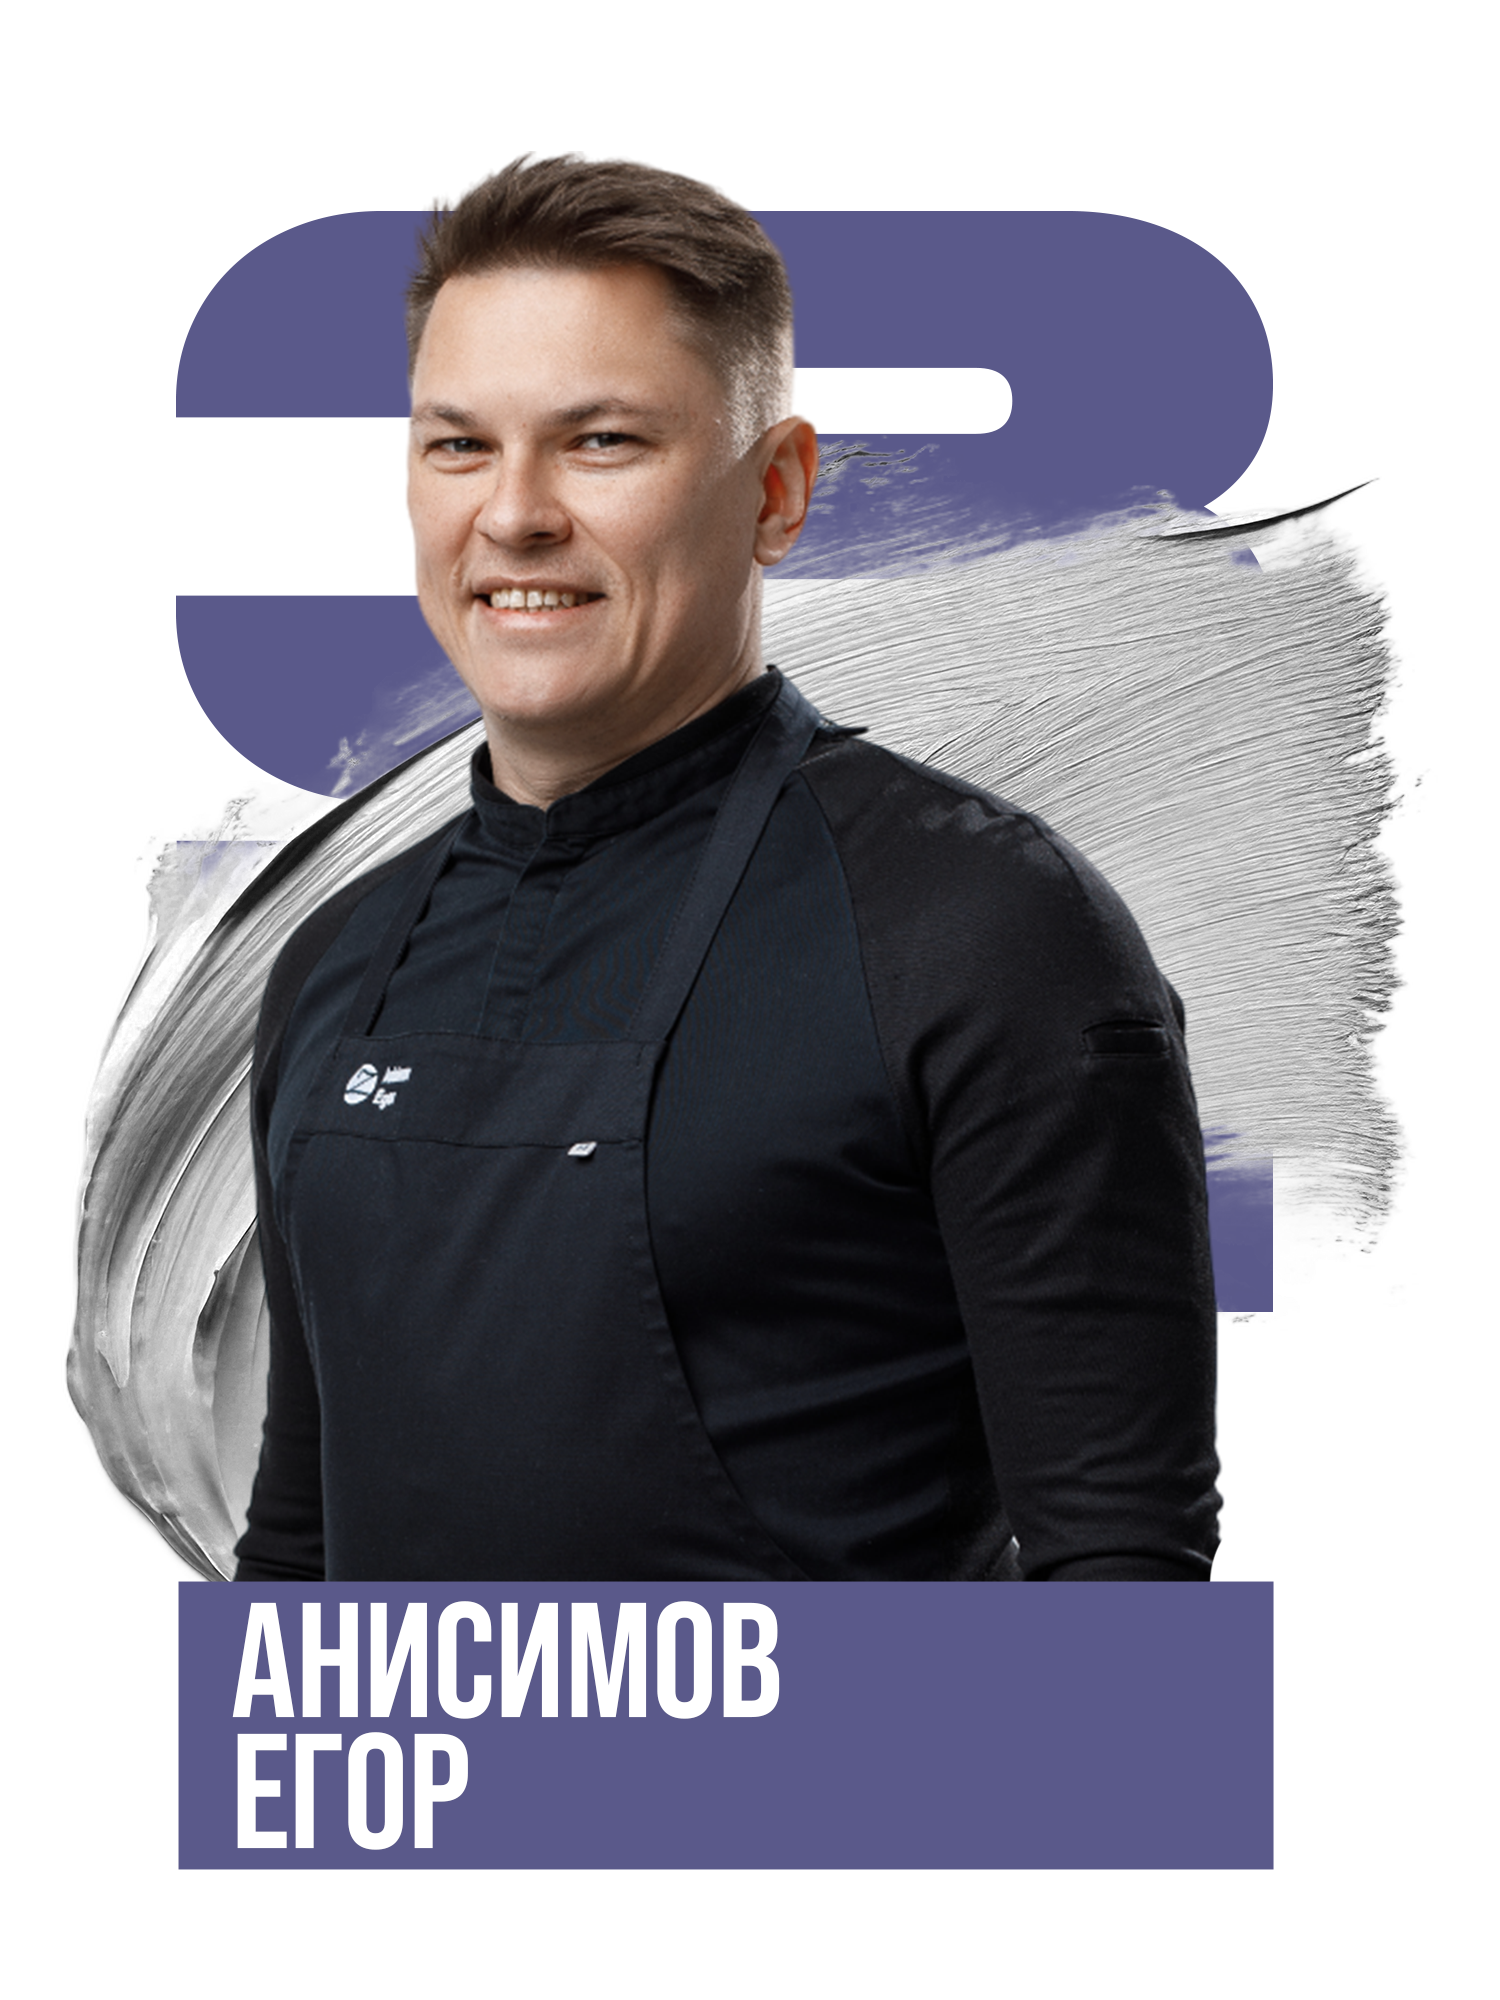 Анисимов Егор